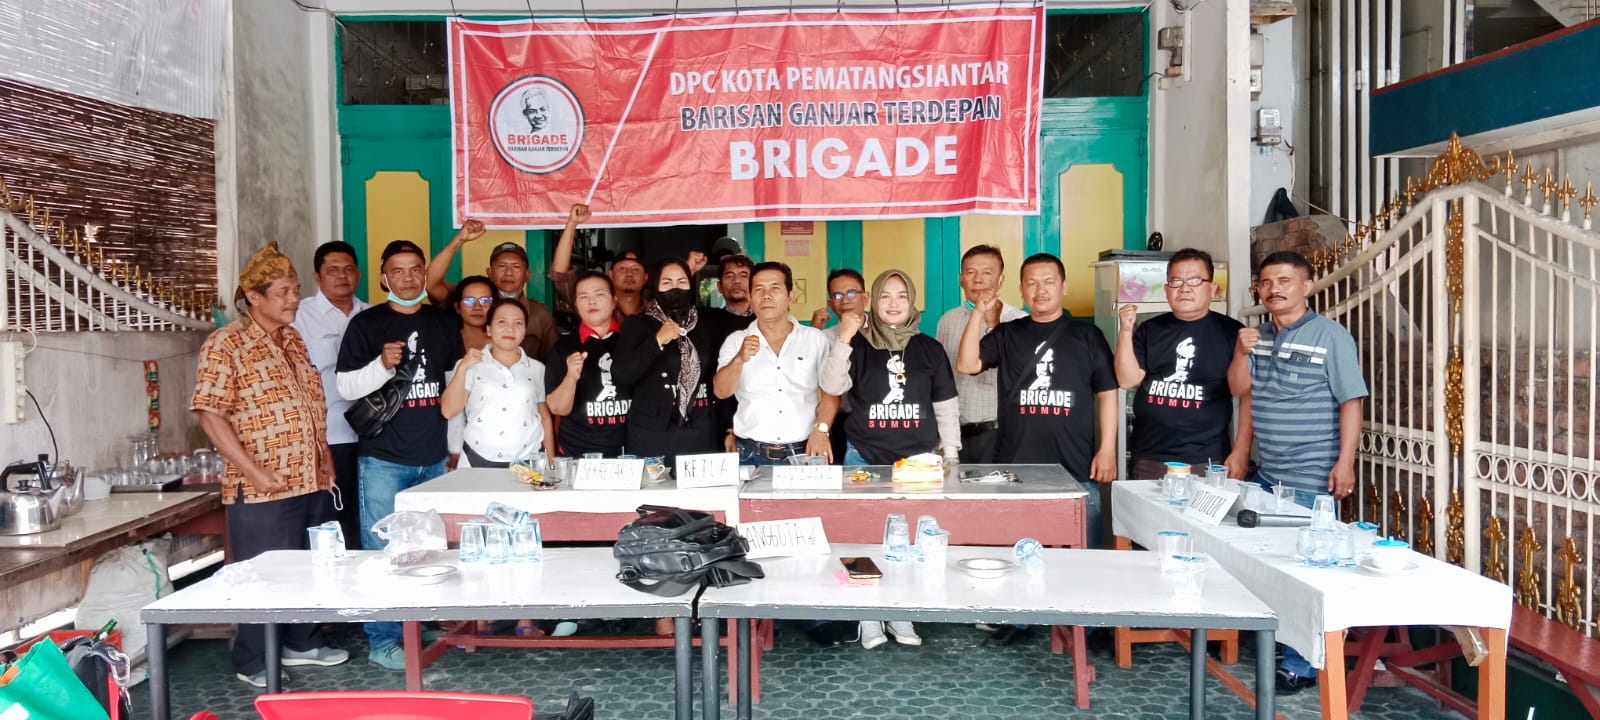 DPC BRIGADE Kota Pematang Siantar Meresmikan Posko